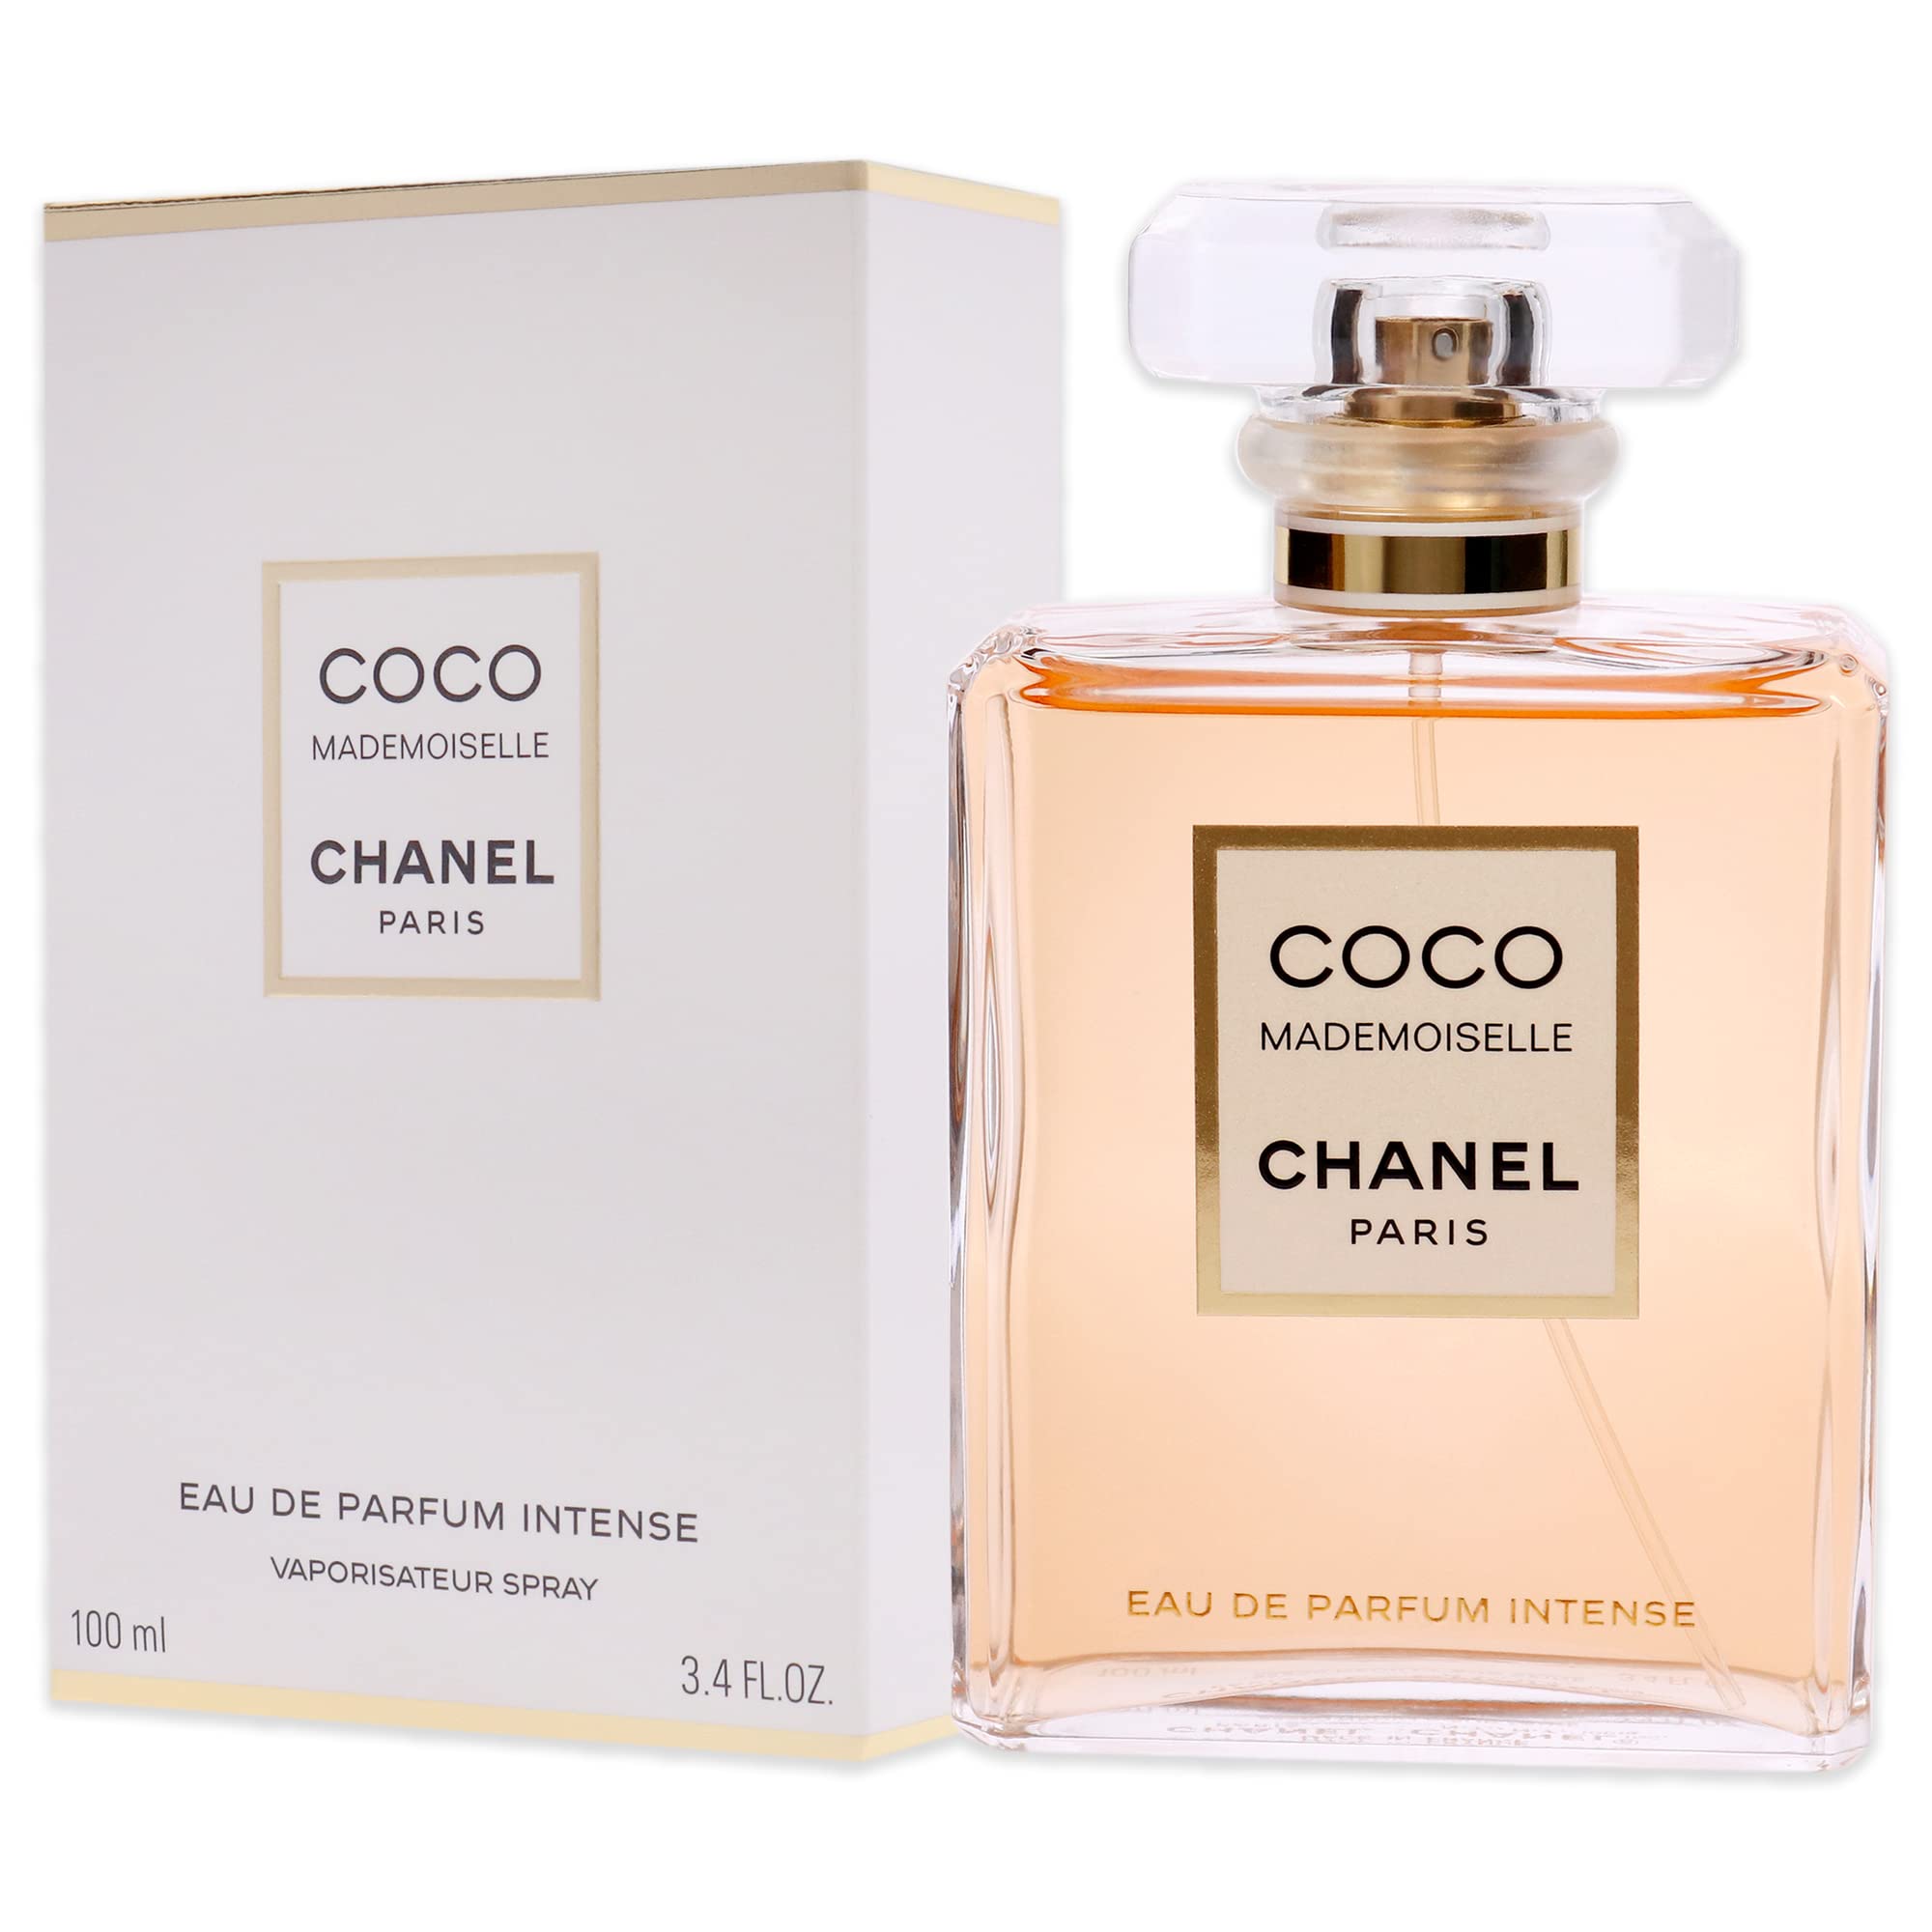 Chanel Coco Mademoiselle EDP Intense nhập Mỹ giá tốt tại Đồ Hiệu US